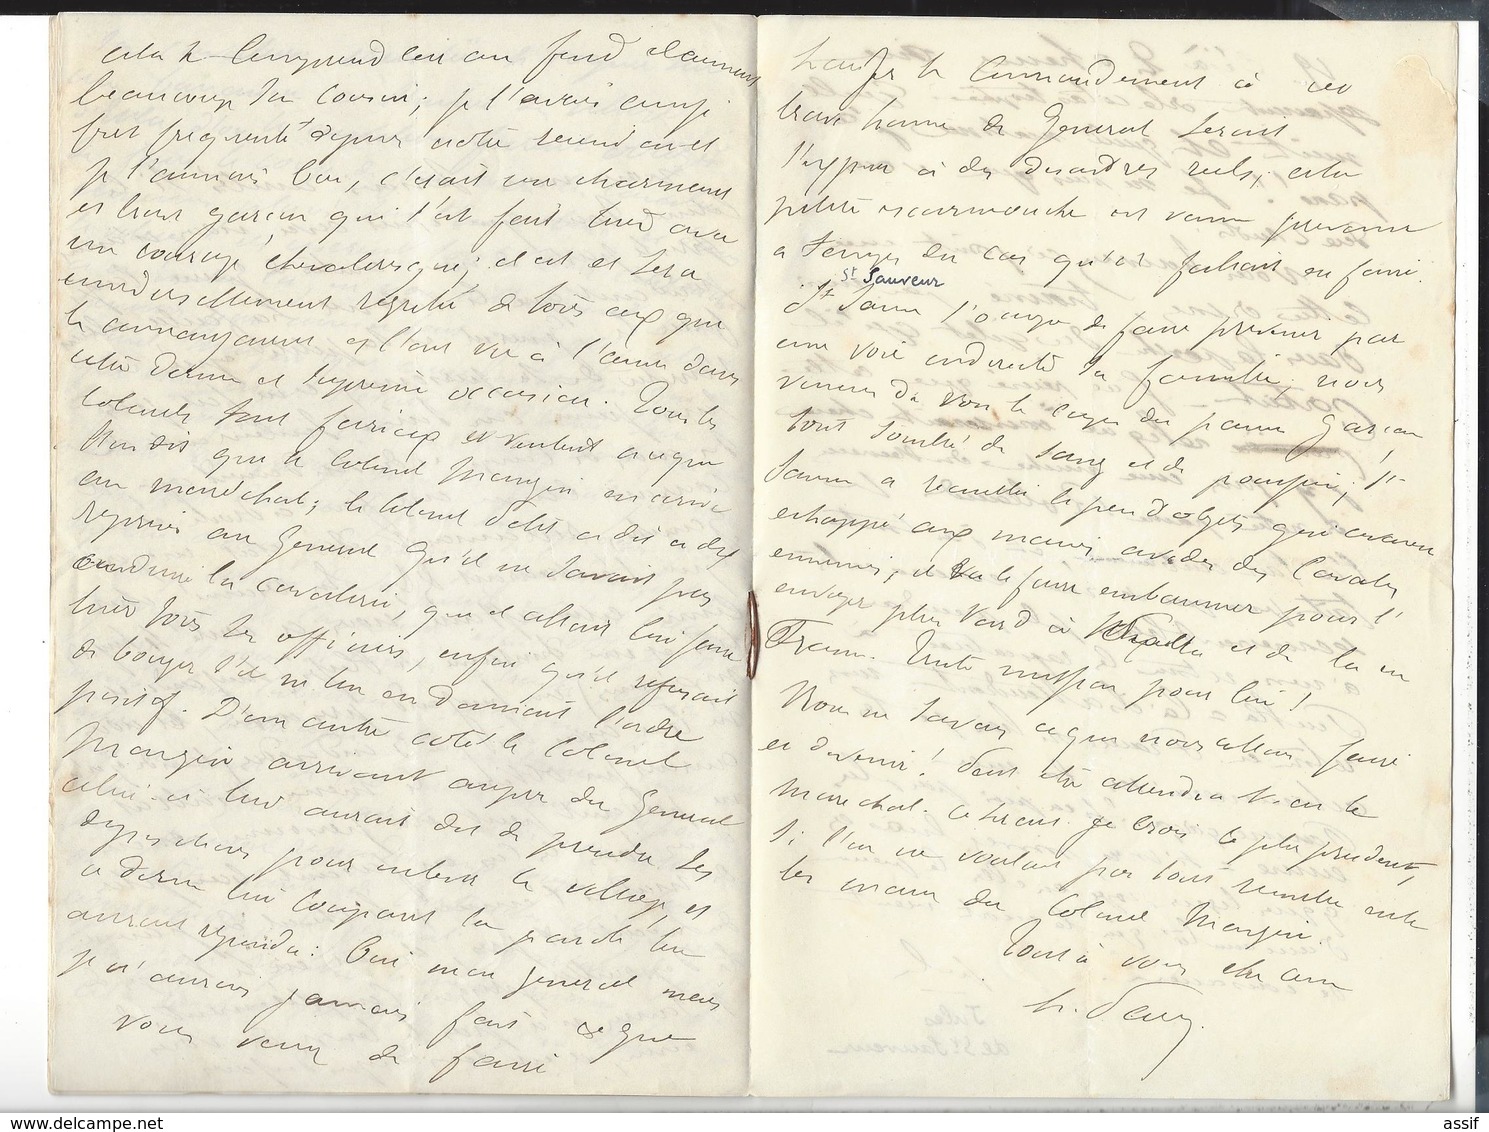 MEXIQUE MEXICO Dossier  Roland du Luart 5 è Hussards  Autographe 1864 + 2 lettres récit combat Etla 20 p.( 3 è Zouaves )